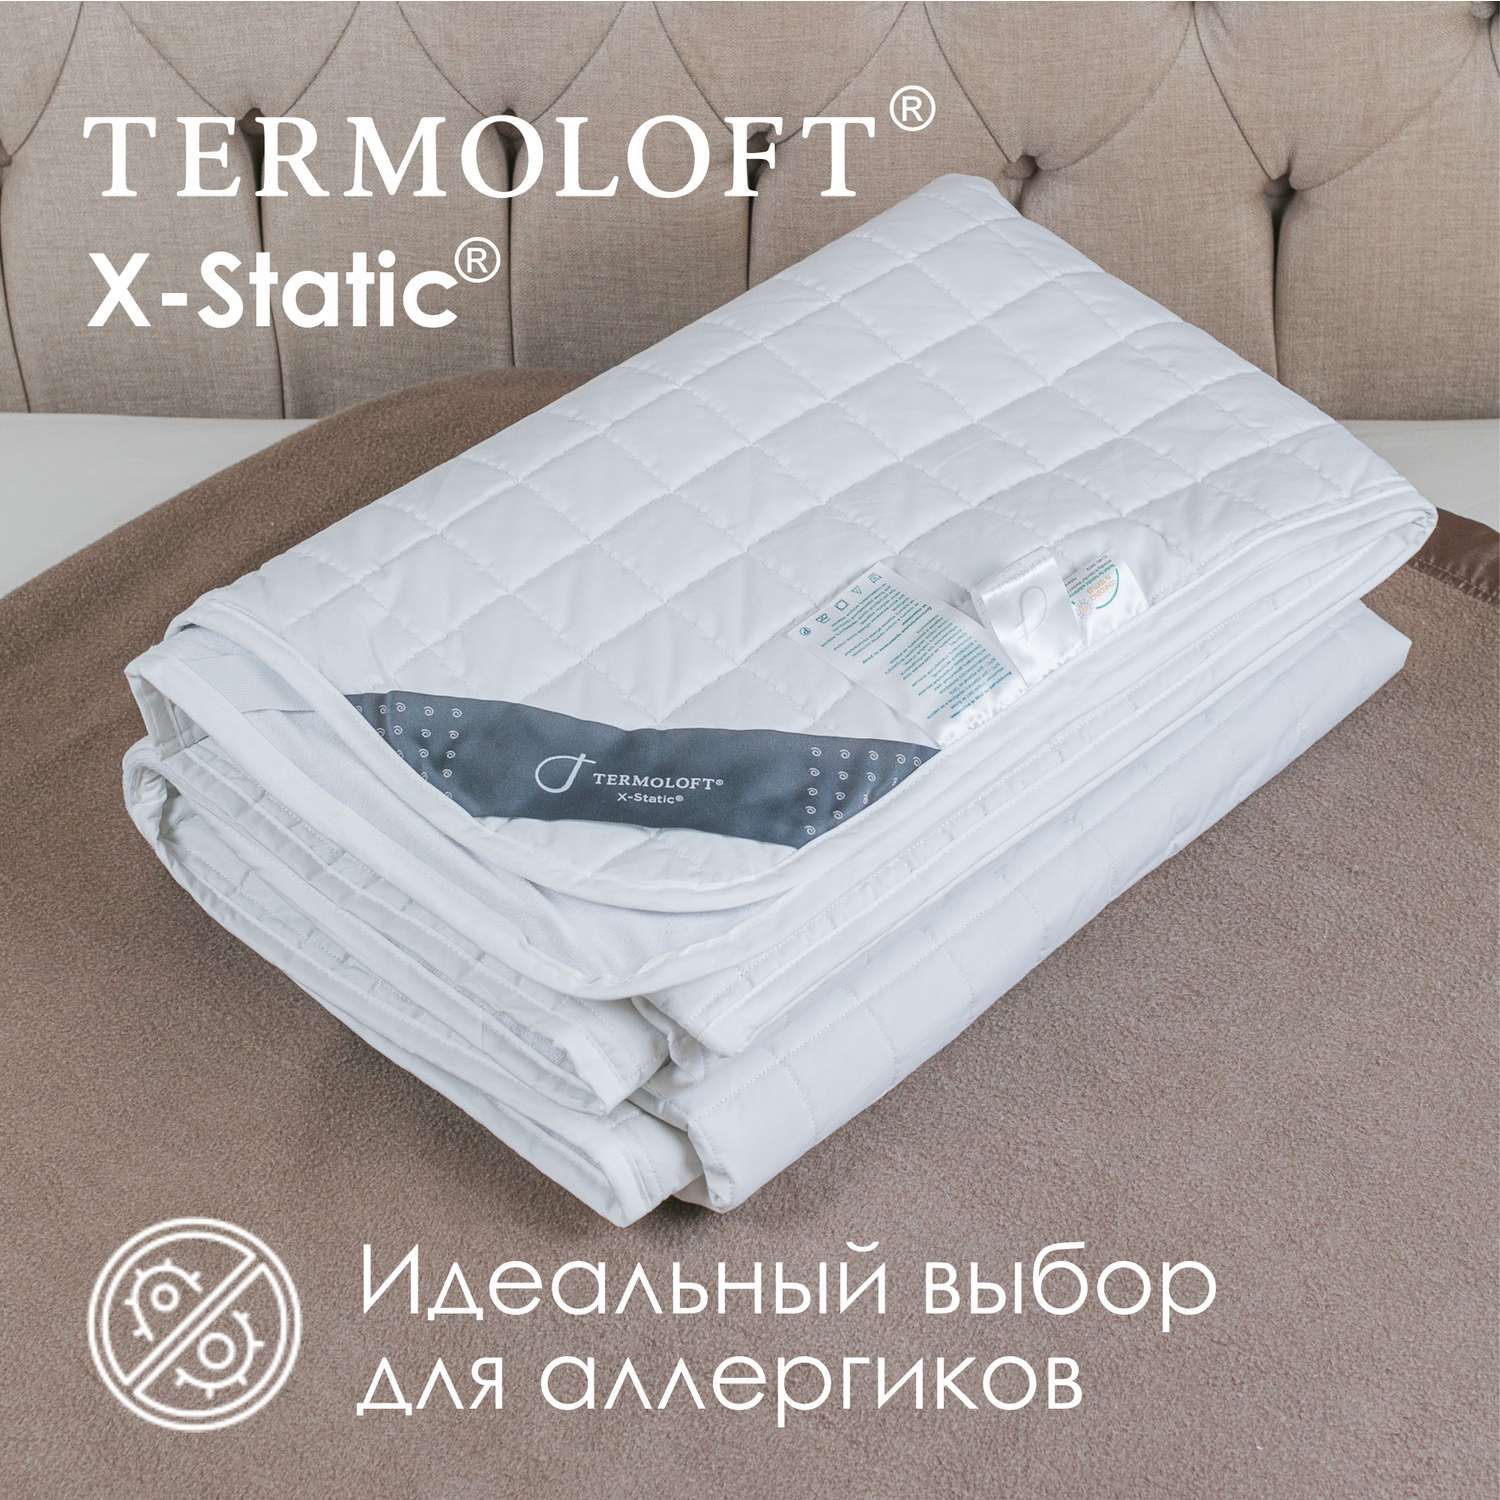 Наматрасник Termoloft X-Static с волокнами серебра 180х200 - фото 3